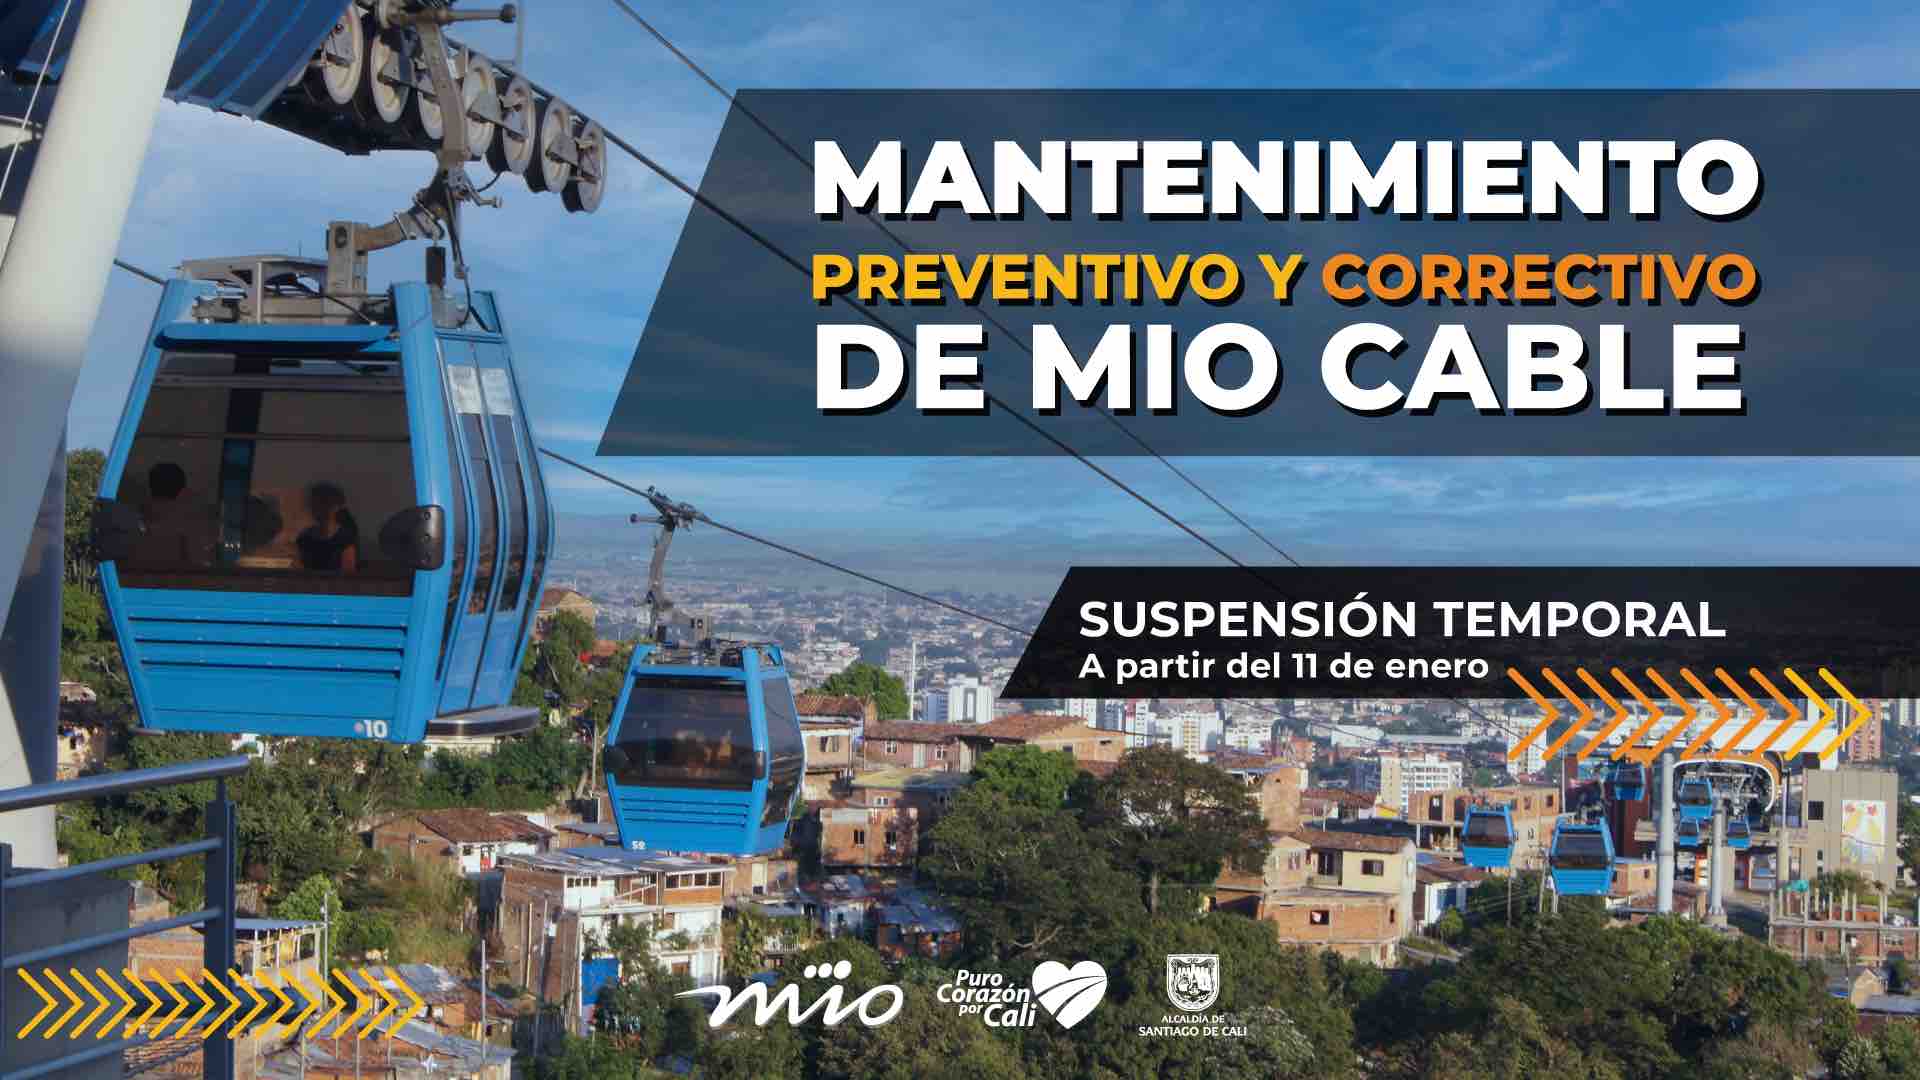 Mantenimiento preventivo y correctivo de Mio Cable. Suspensión temporal a partir del 11 de enero